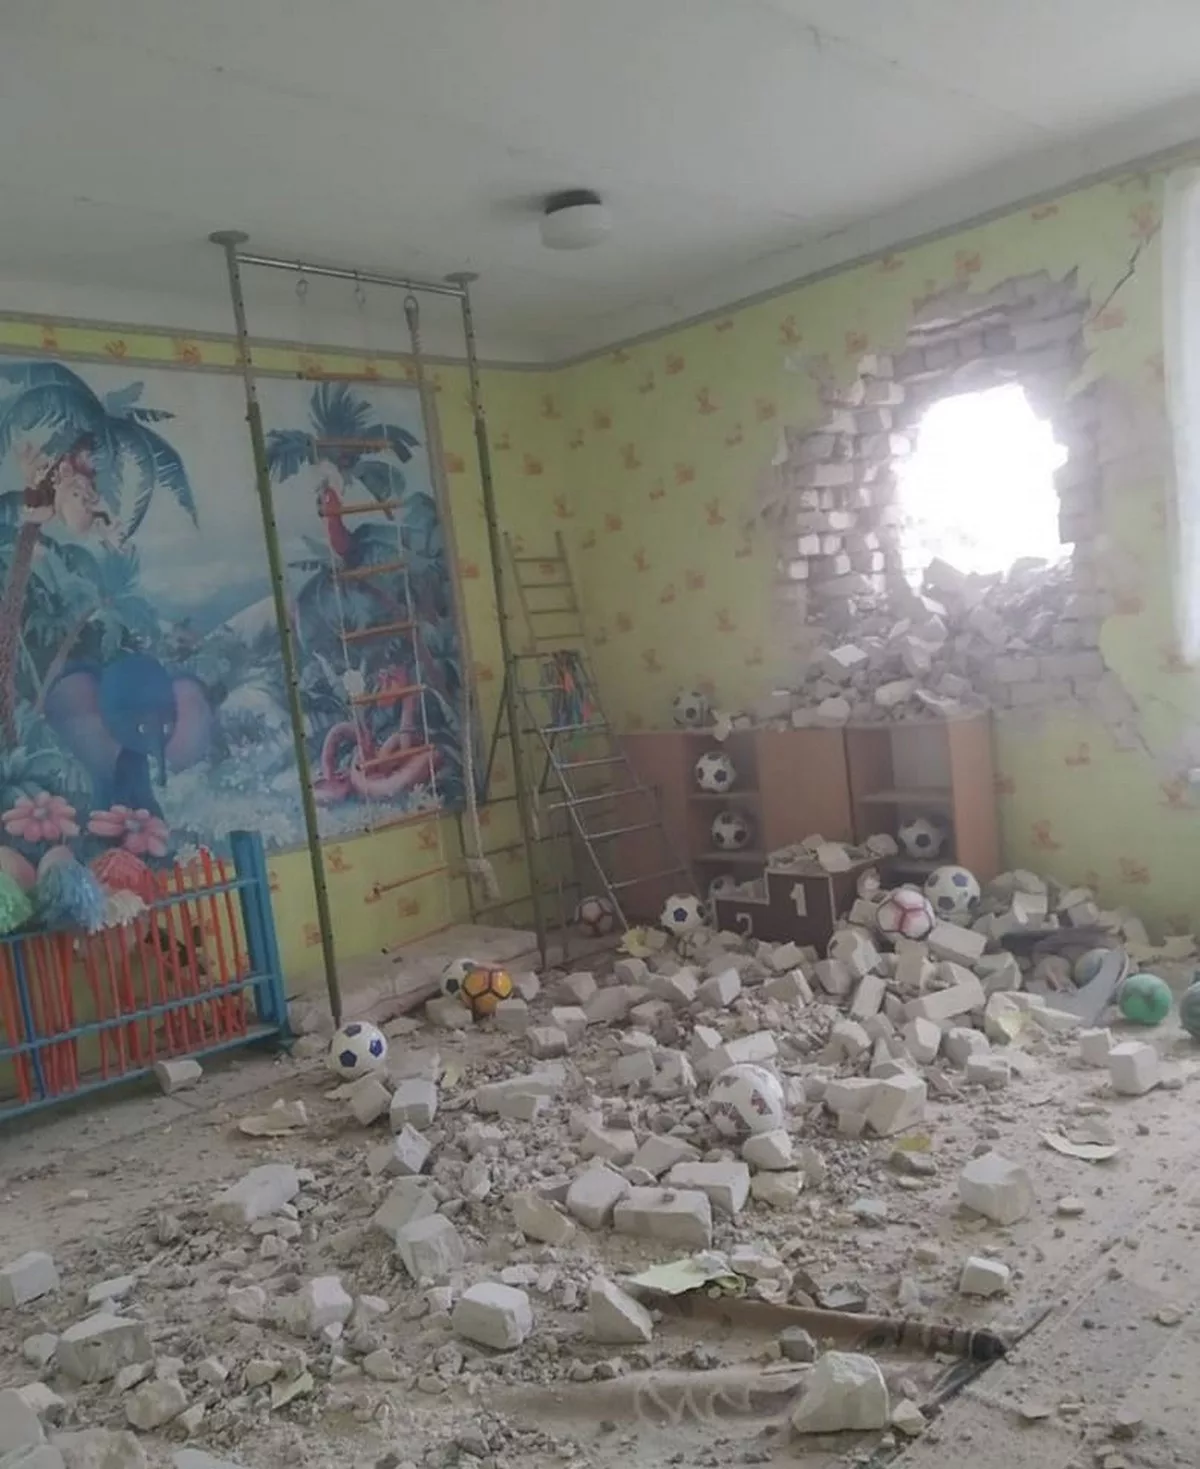 Донбас сьогодні: у Станиці Луганській бойовики обстріляли дитячий садок з дітьми 17 лютого